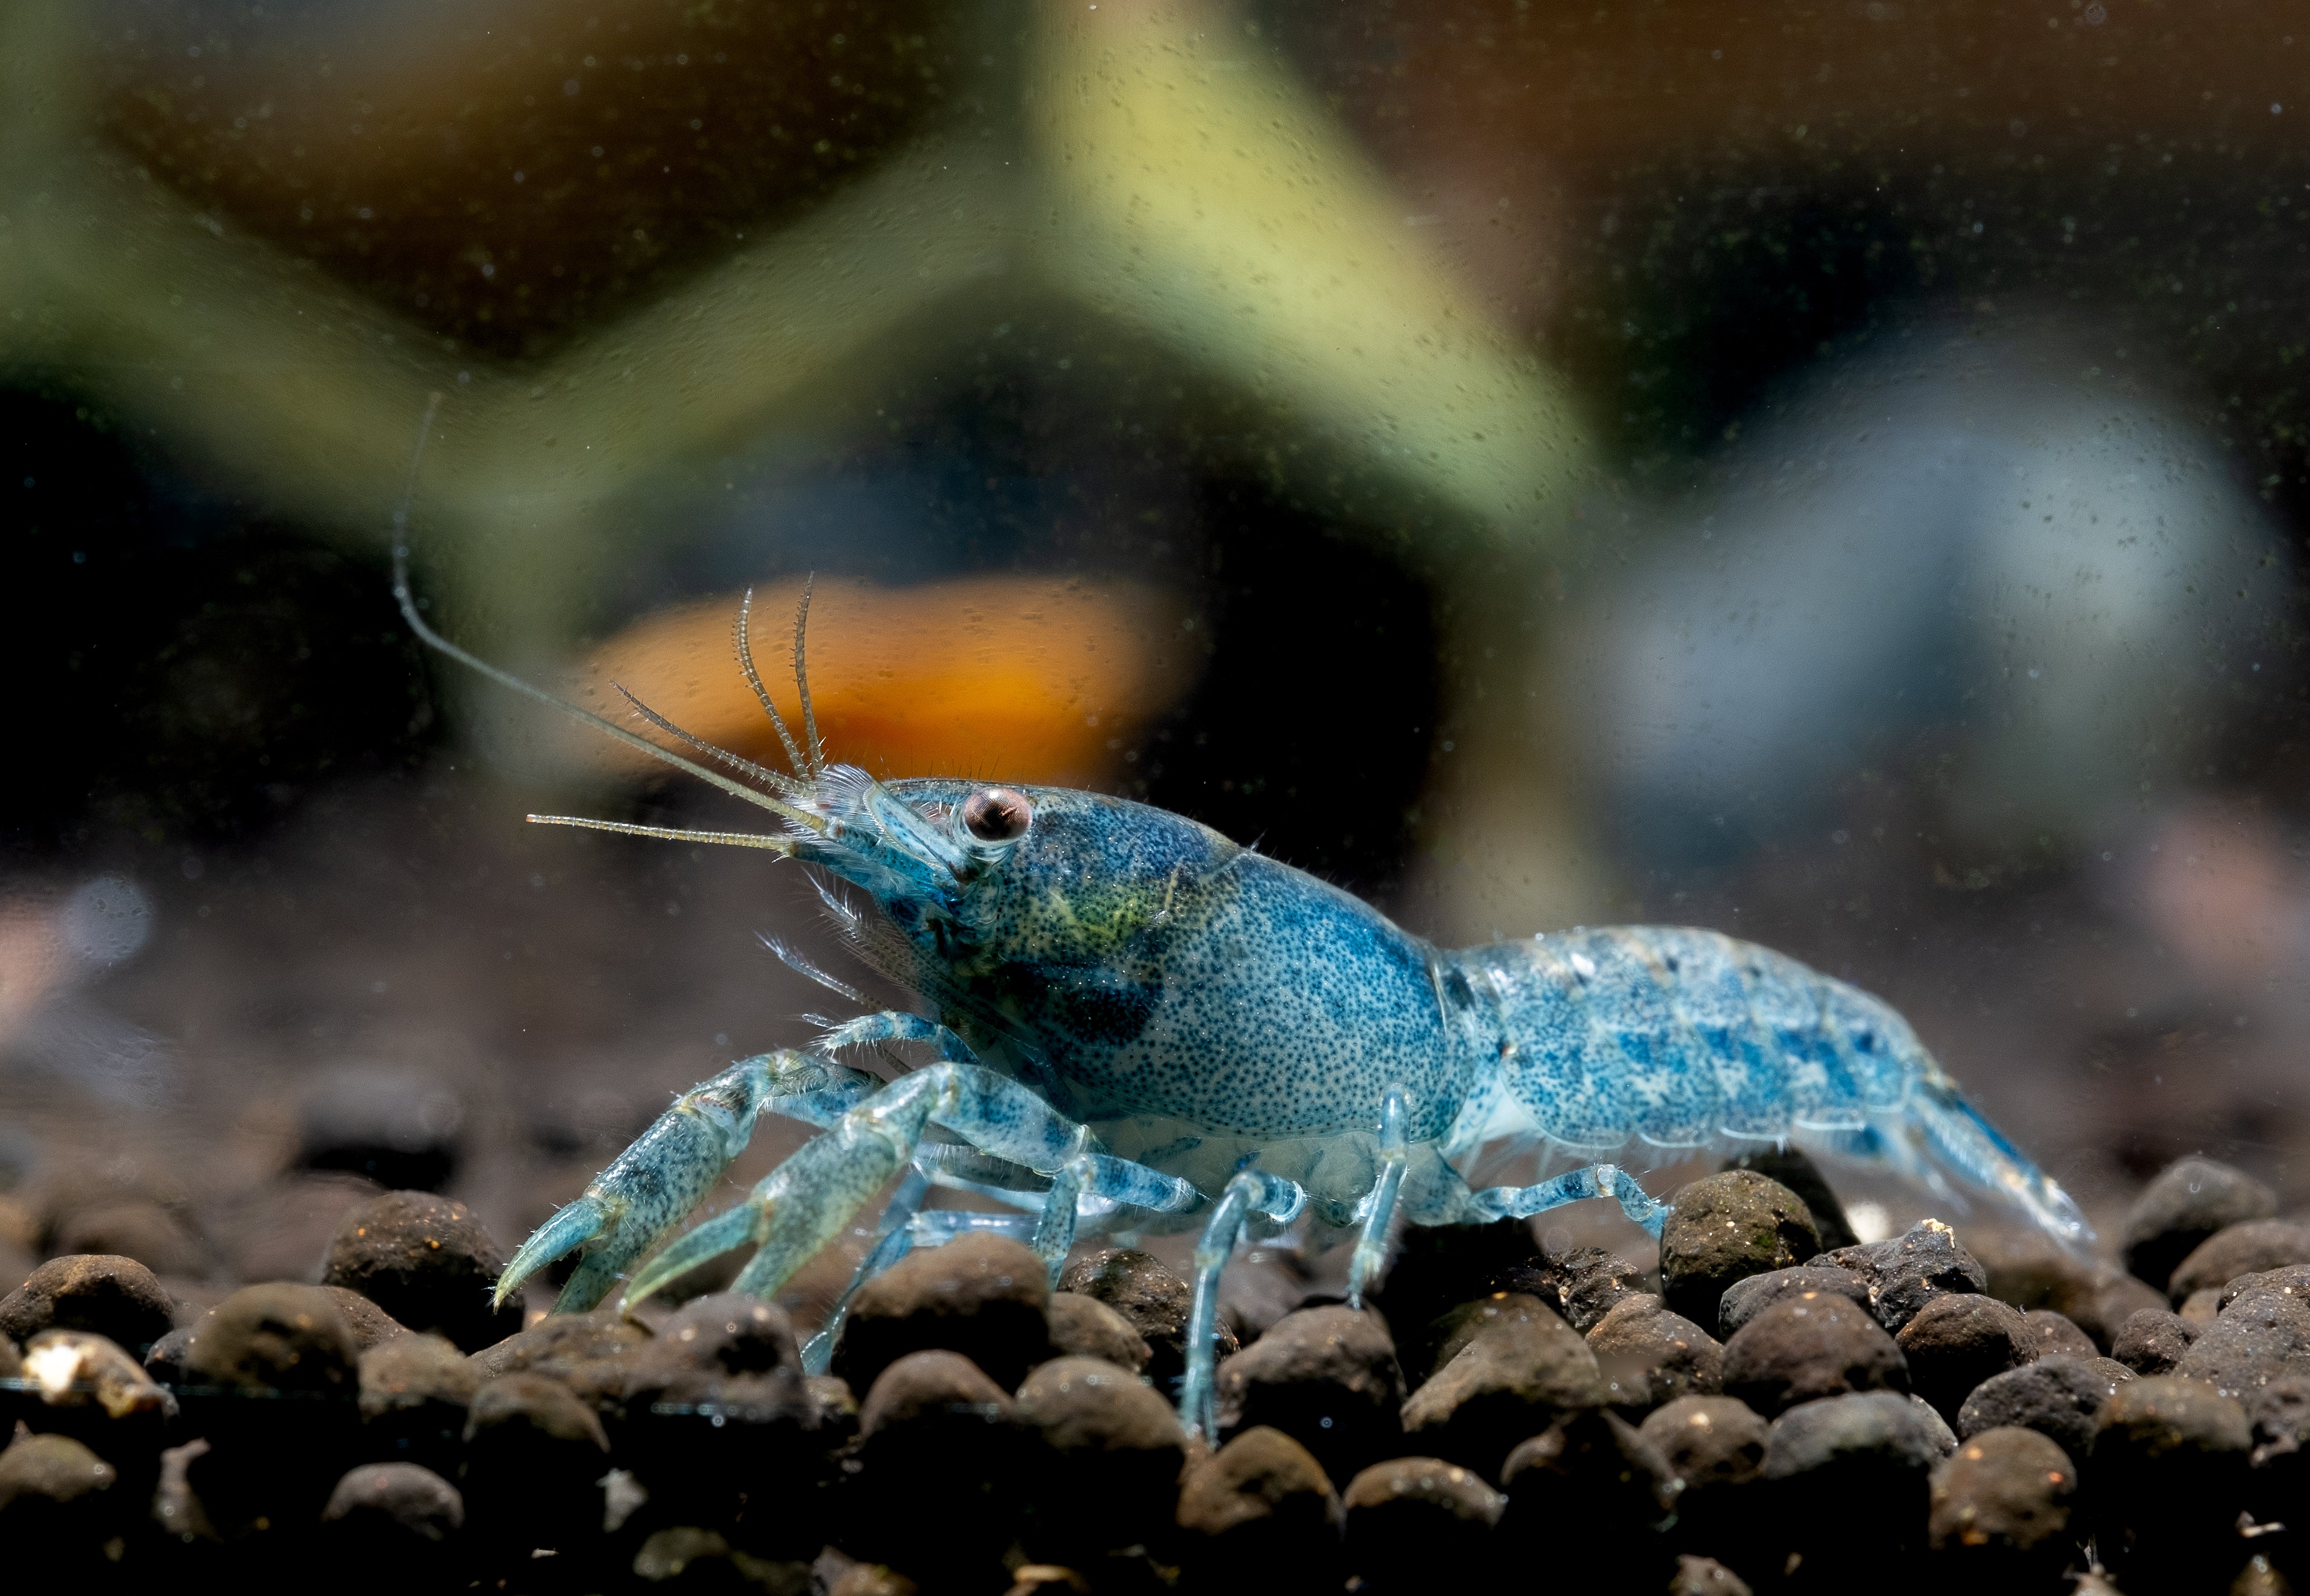 Blue Dwarf Lobster in planted aquarium